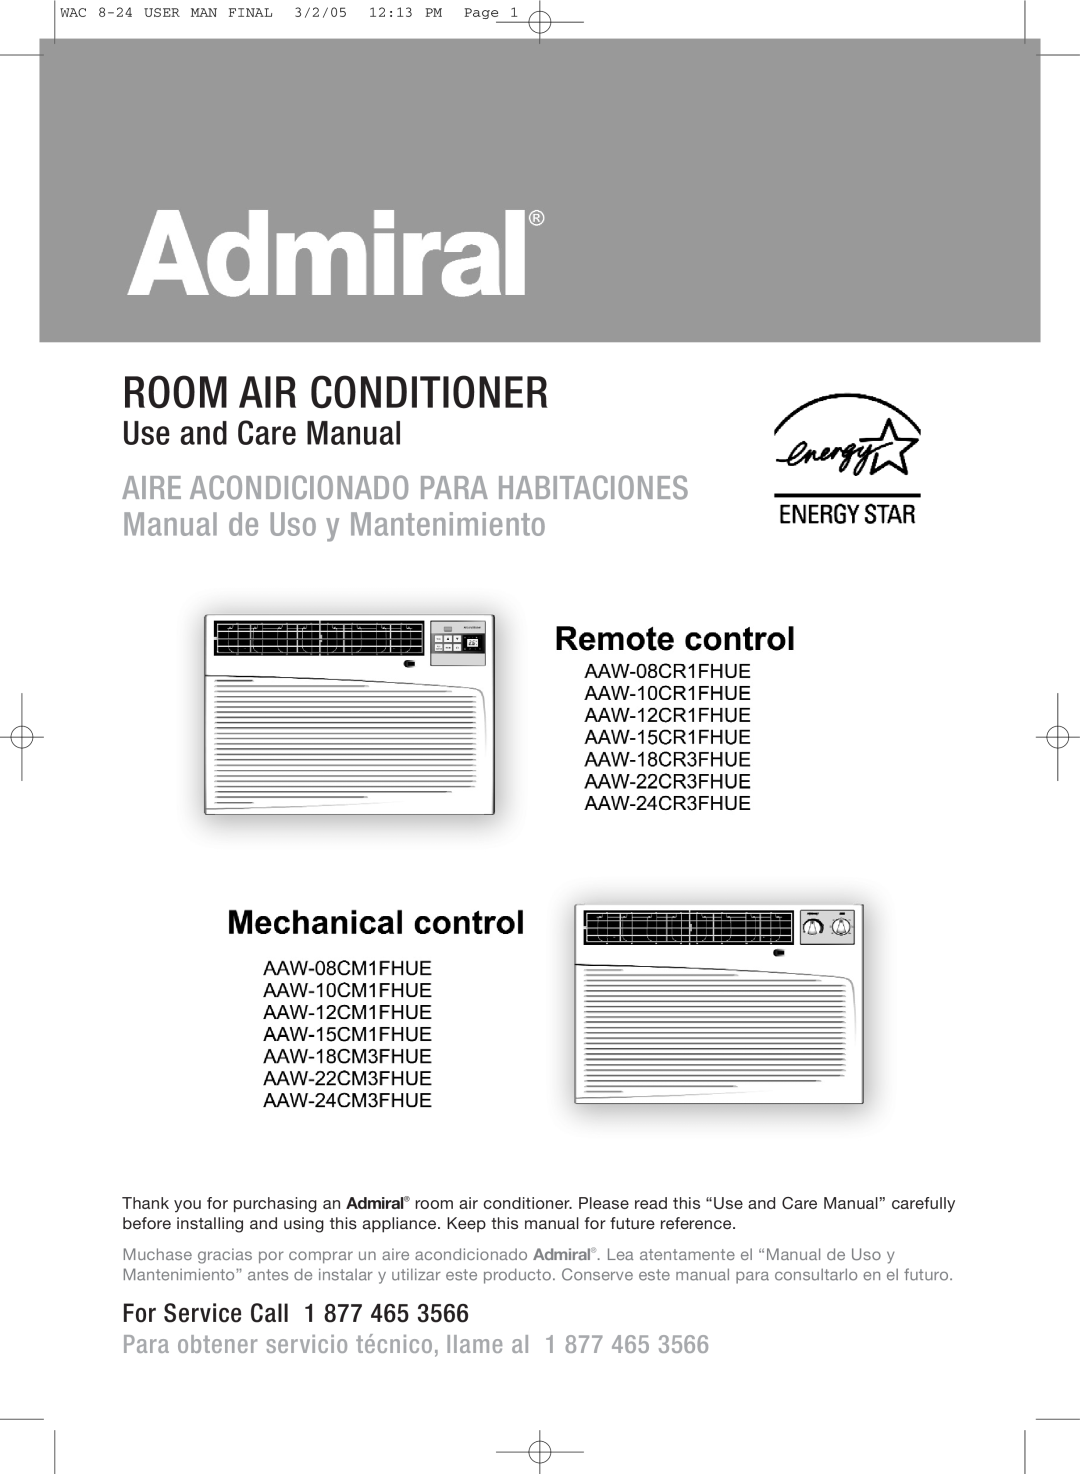 Admiral AAW-24CM1FHUE manual Room Air Conditioner, Aire Acondicionado Para Habitaciones, Manual de Uso y Mantenimiento 